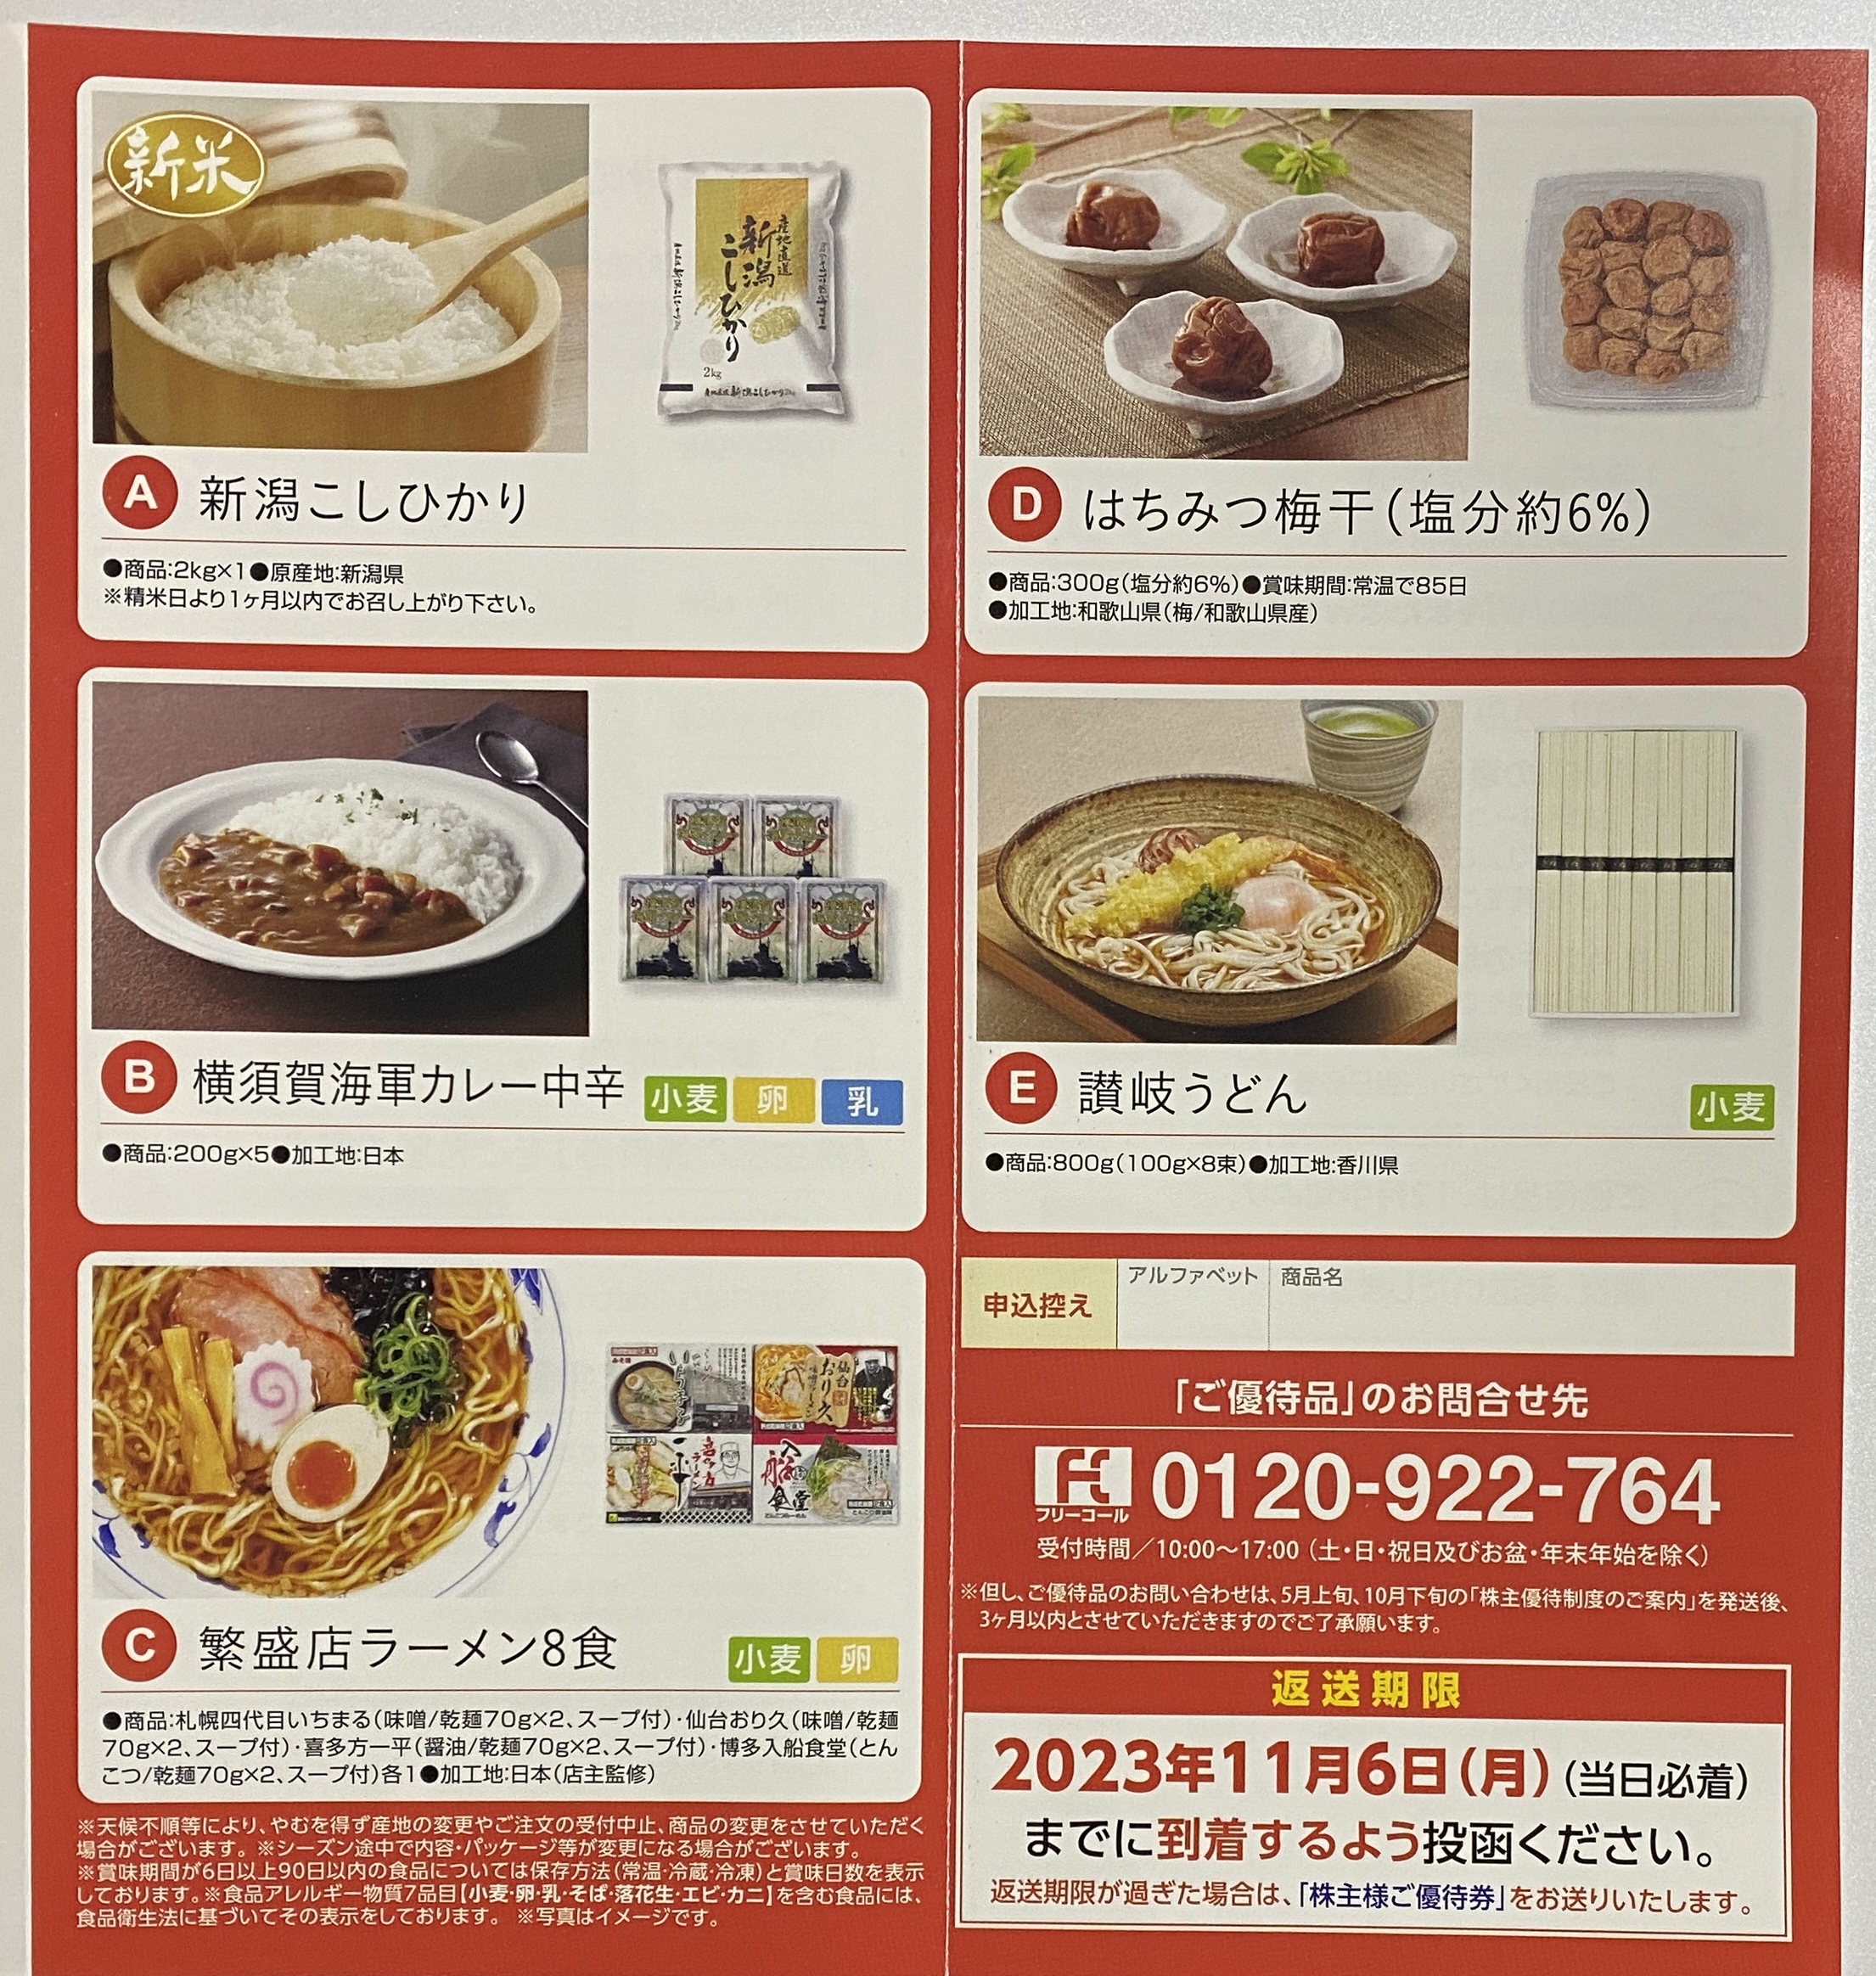 ユナイテッド・スーパーマーケット 株主優待券 32，000円分-